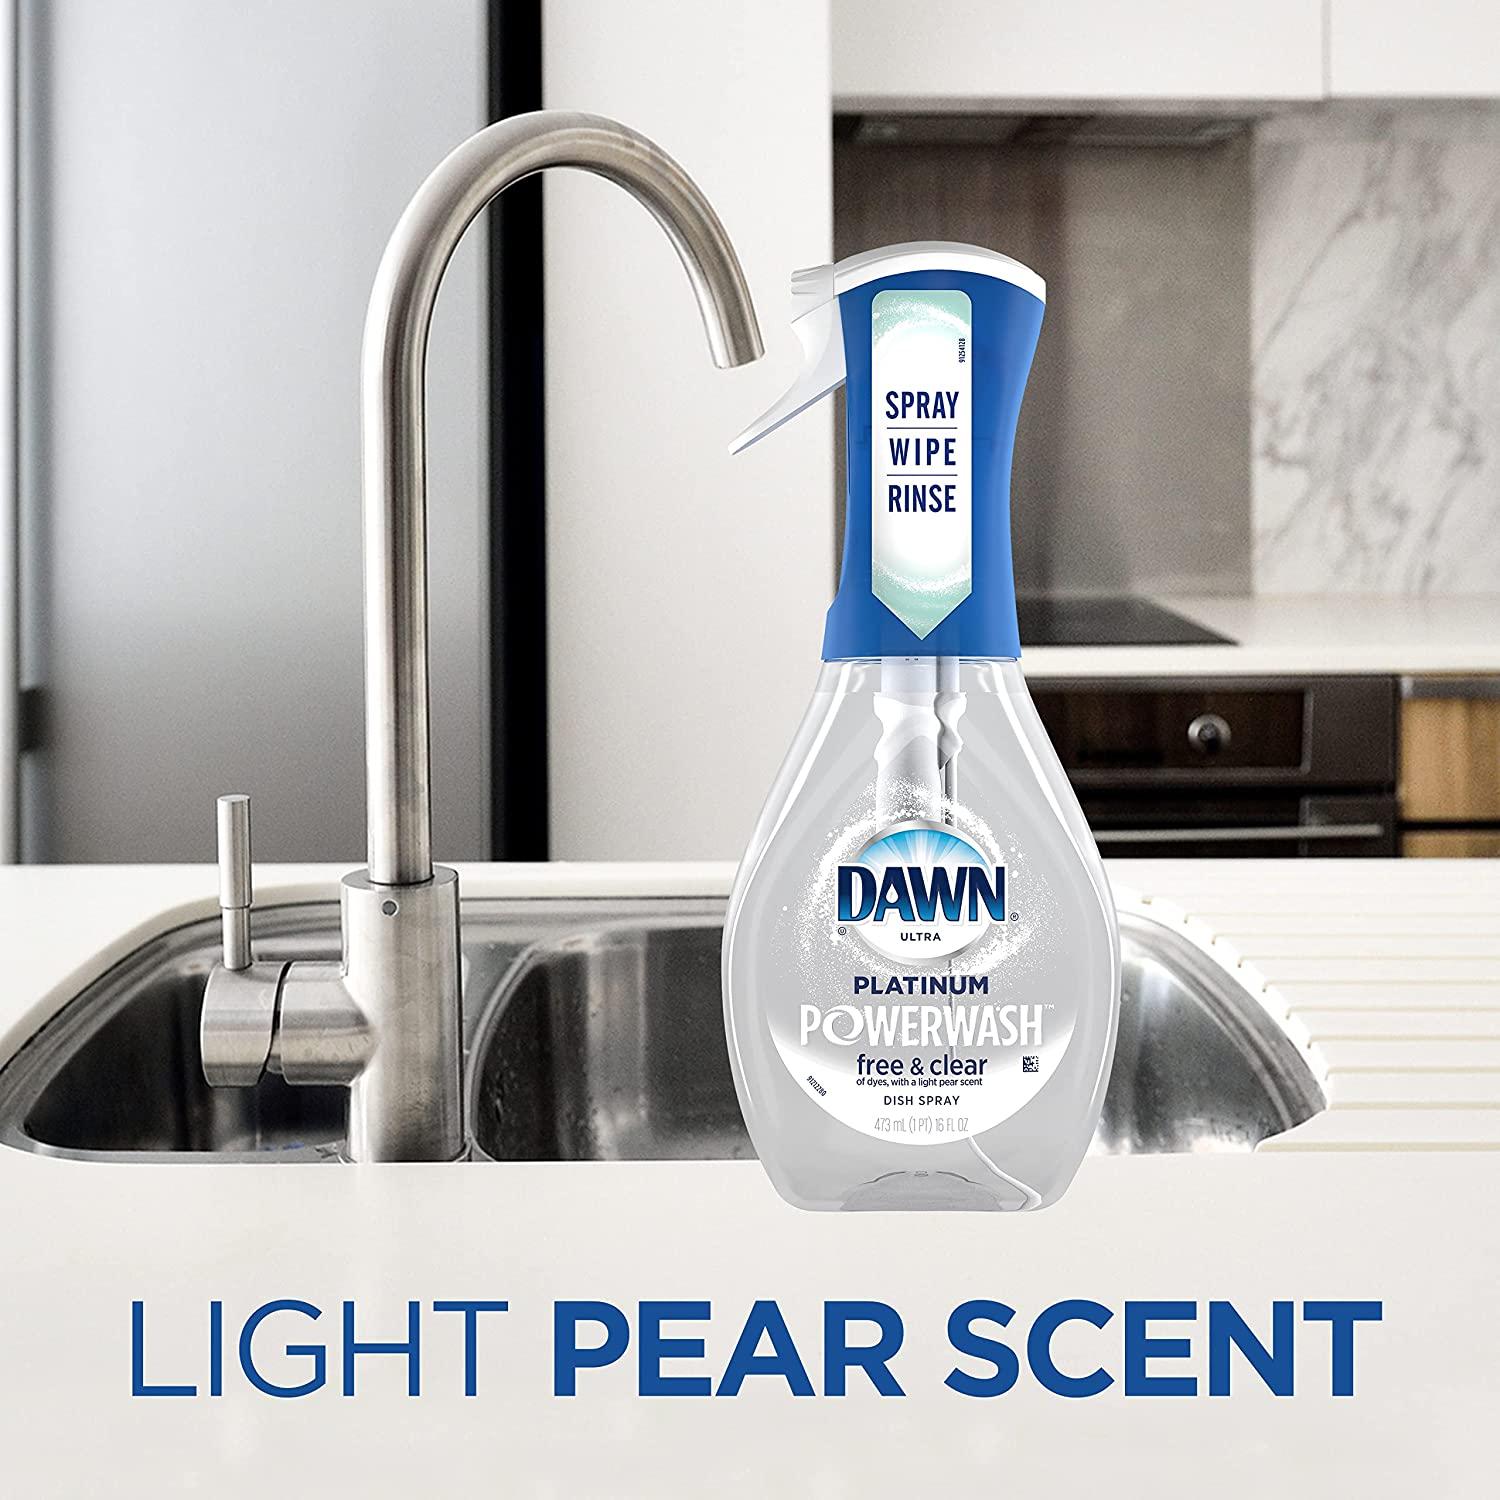 Dawn 65732 Free & Clear Powerwash Dish Soap Spray 16 Ounce Pear Scent:  Dishwasher & Dishwasher Dish Cleaner (037000657323-1)